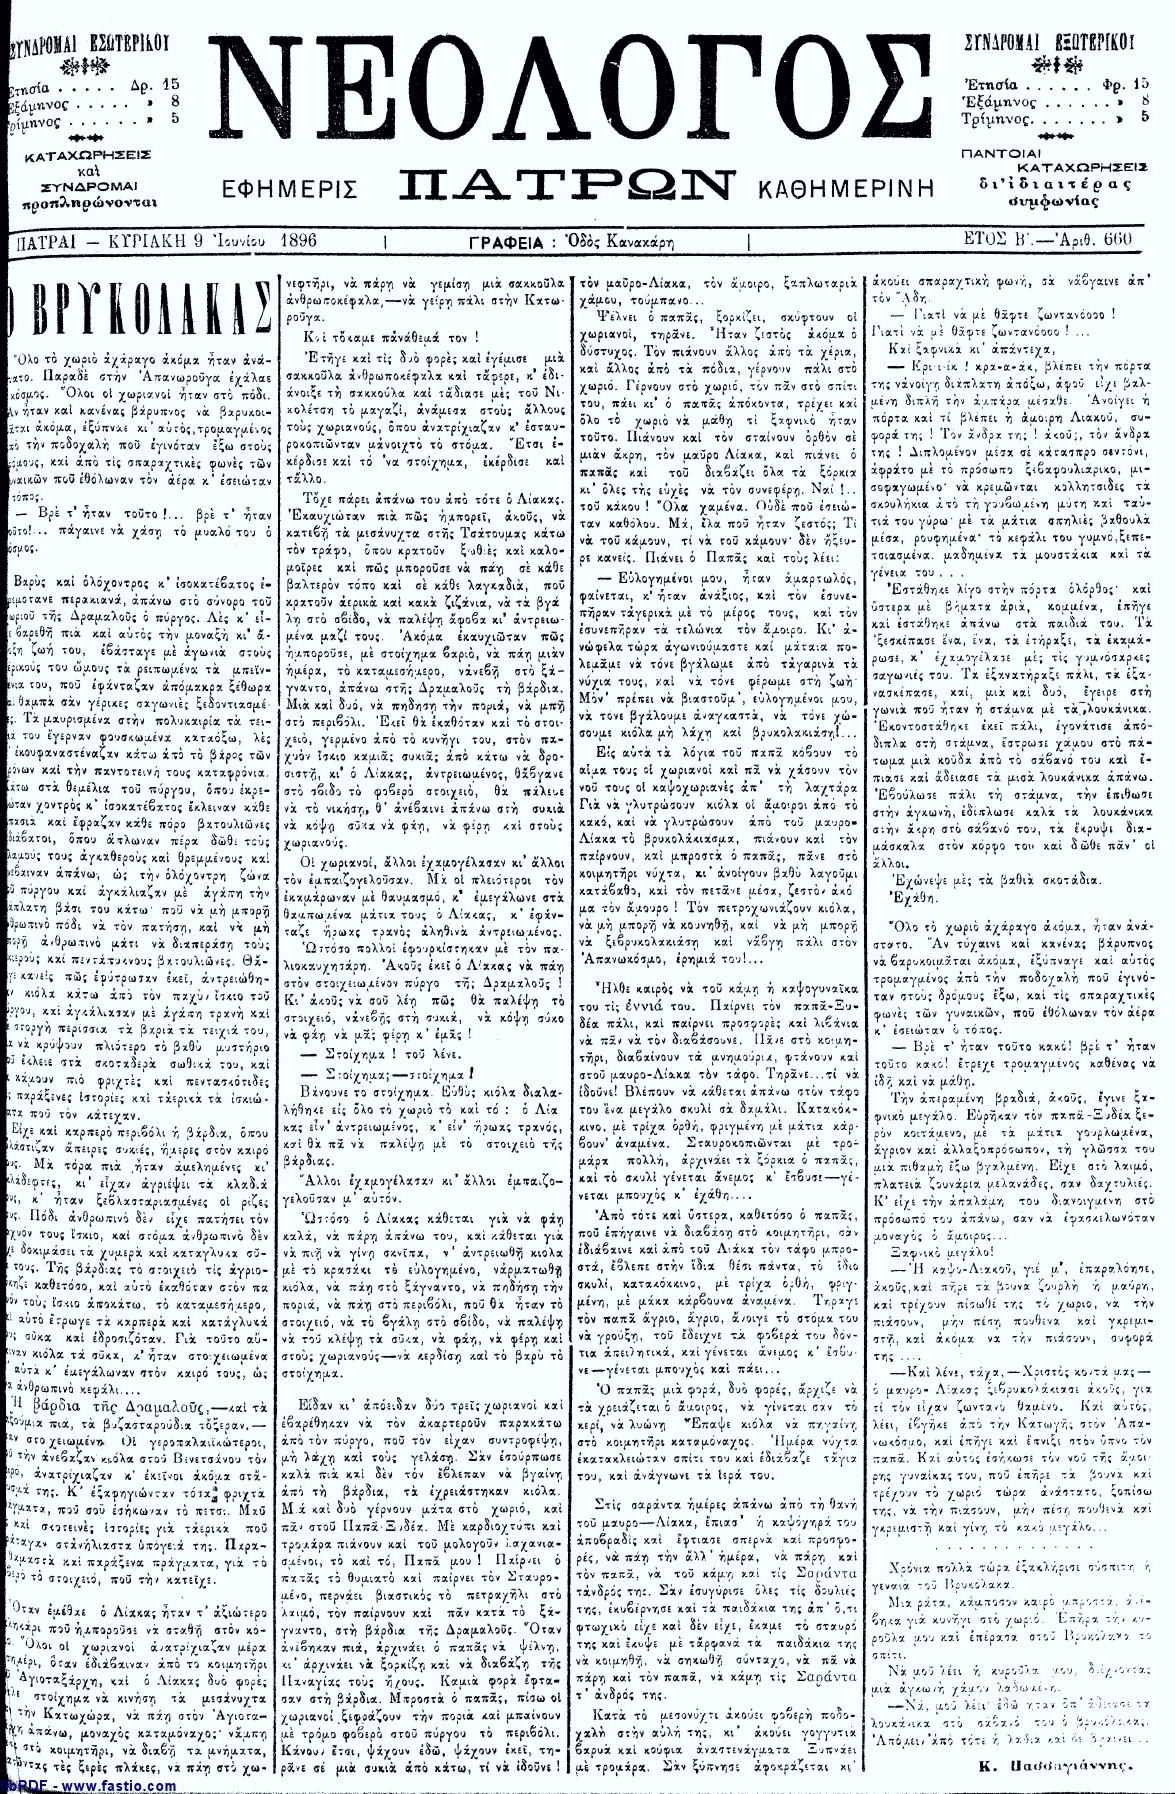 Το άρθρο, όπως δημοσιεύθηκε στην εφημερίδα "ΝΕΟΛΟΓΟΣ ΠΑΤΡΩΝ", στις 09/06/1896